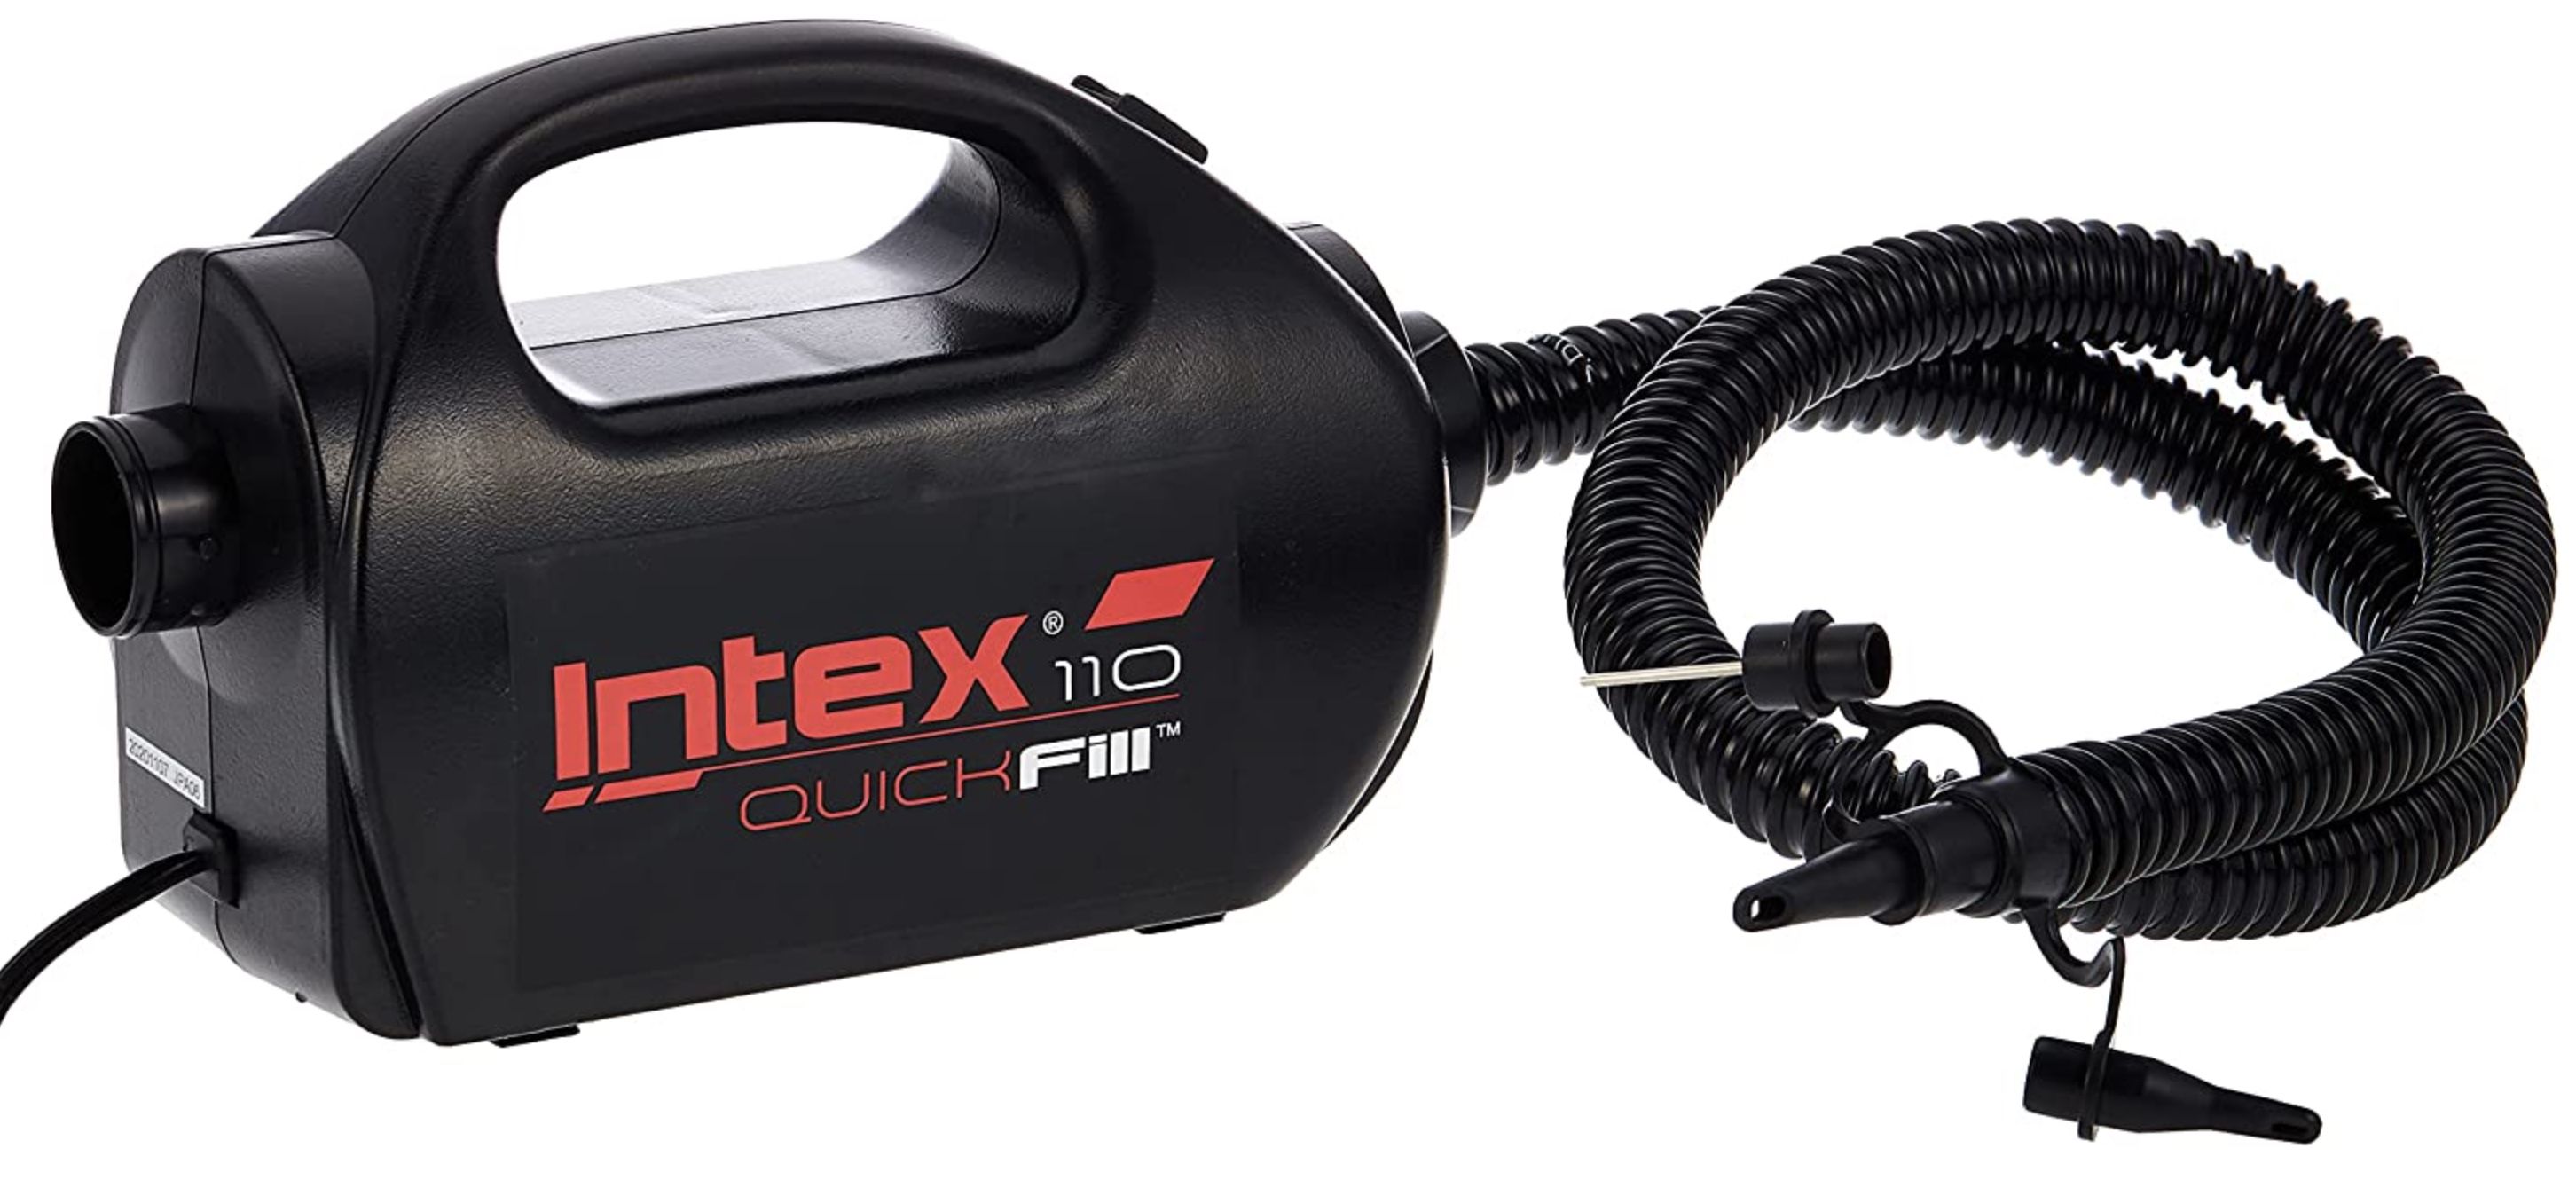 Intex Quick Fill Pump elektrische Luftpumpe 230V/12V mit 2 Geschwindigkeiten für 30,99€ (statt 52€)